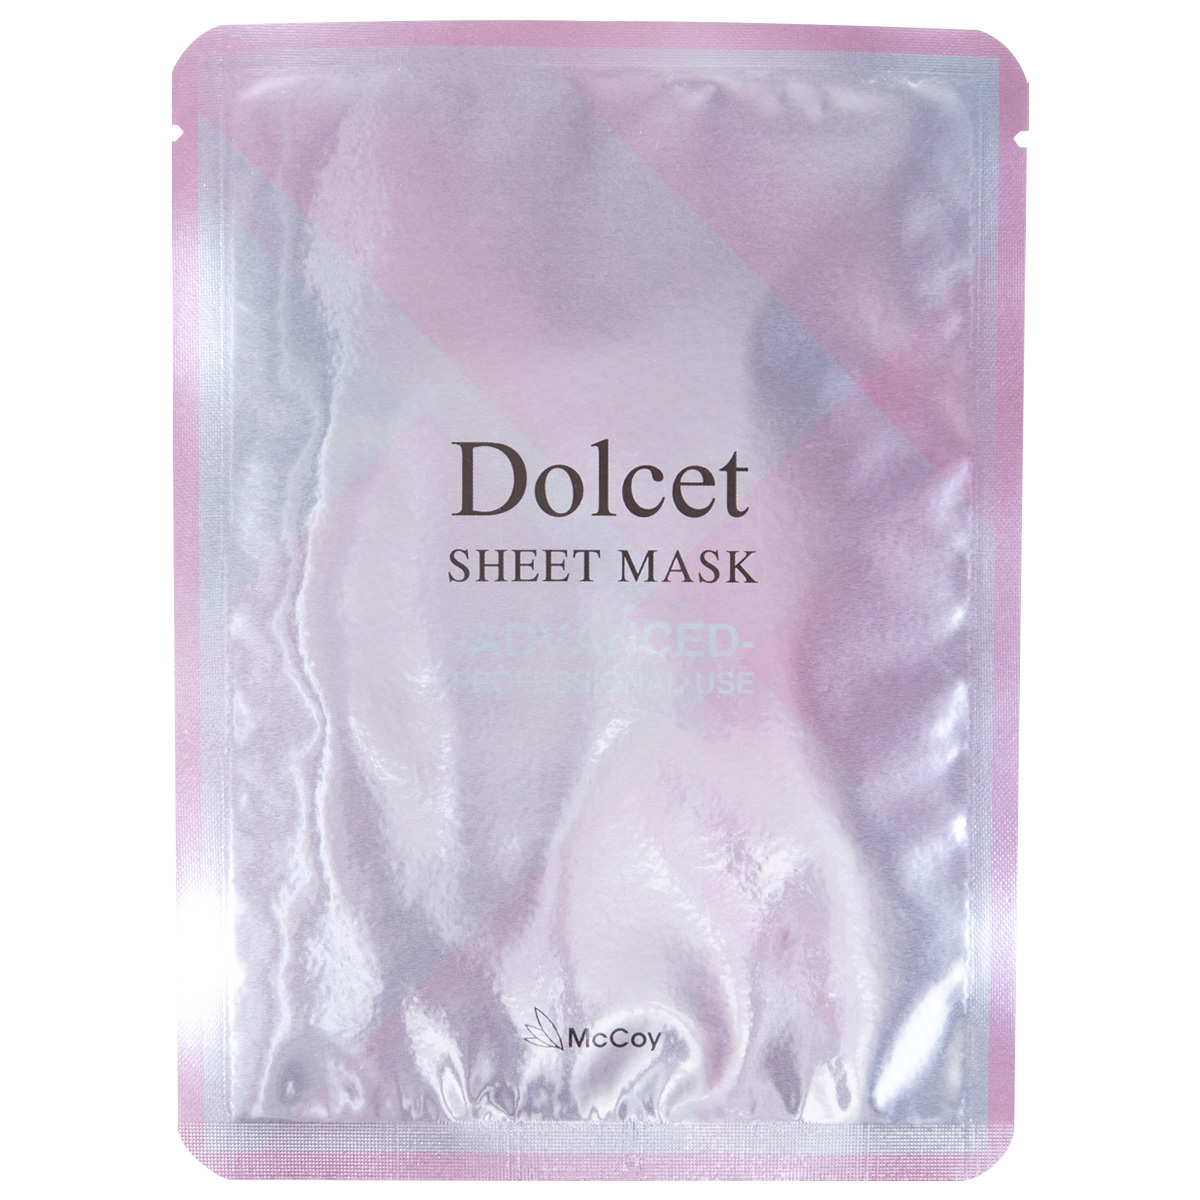 McCoy Dolcet Sheet Mask. Тканевая маска для увлажнения и упругости кожи груди Дольсет МакКой, 4 саше х 2 шт.